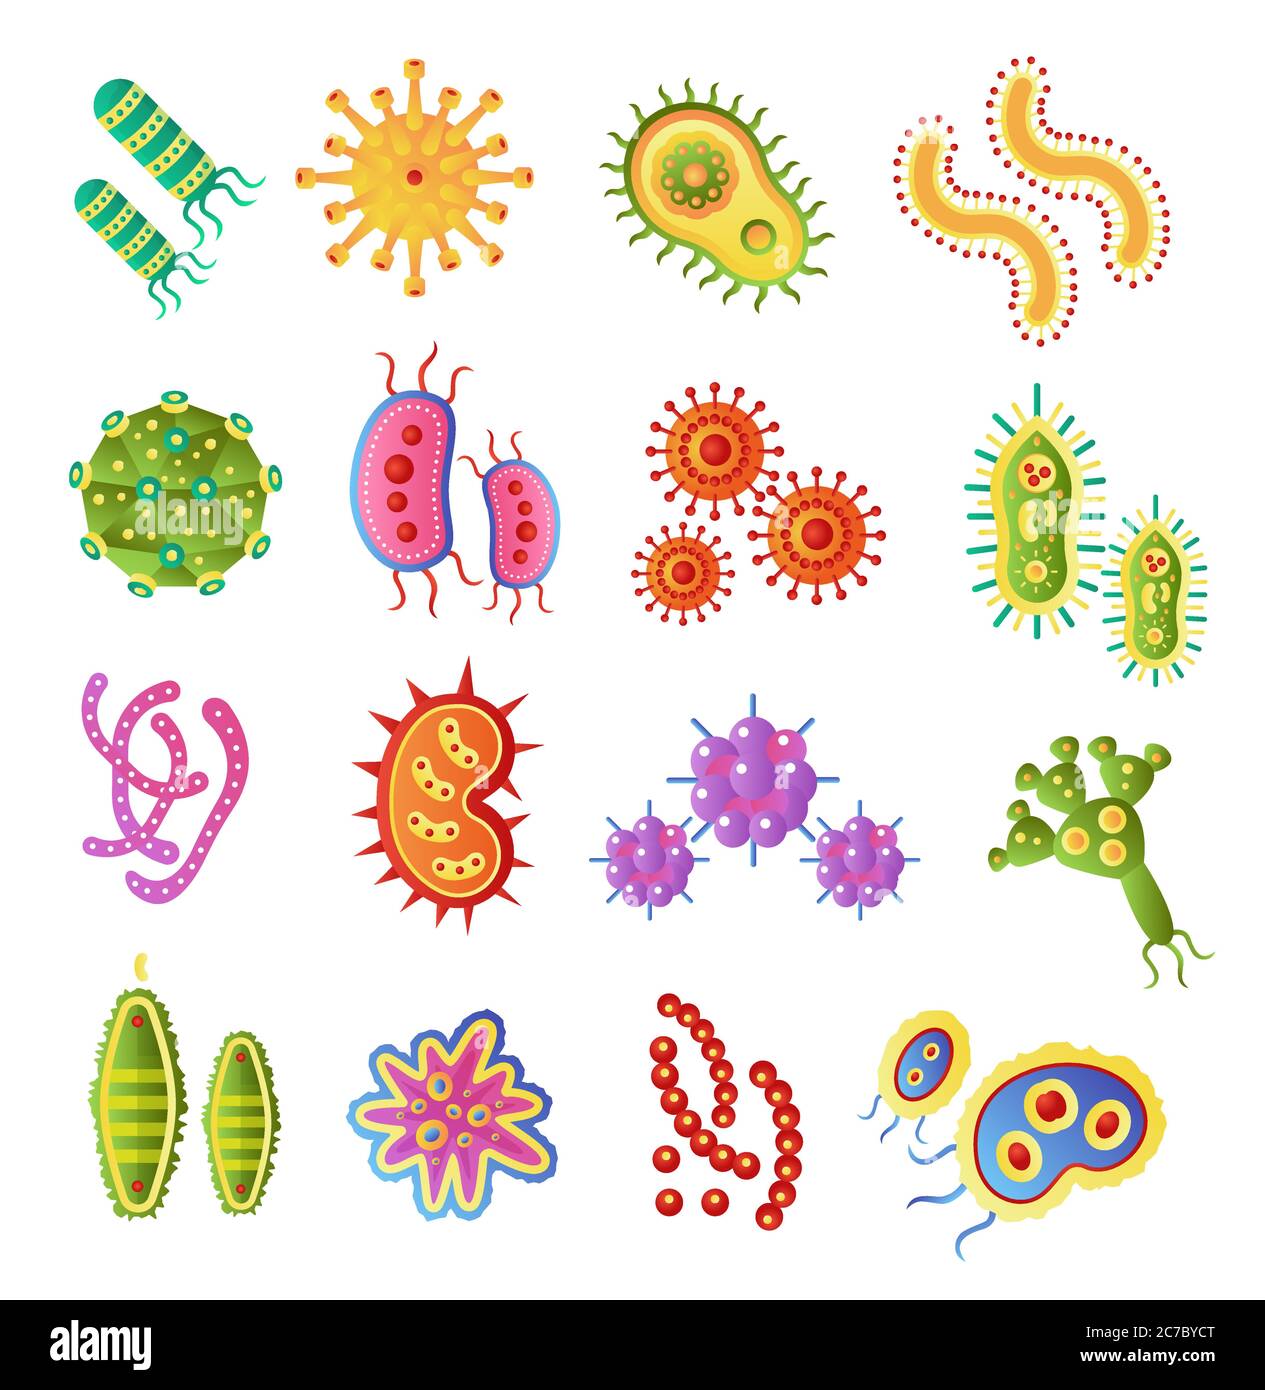 Icônes de biologie des bactéries infectieuses et des vecteurs de virus pandémique. Ilustration de bactéries plates vectorielles. Micro-organisme, allergène isolé sur fond blanc Illustration de Vecteur